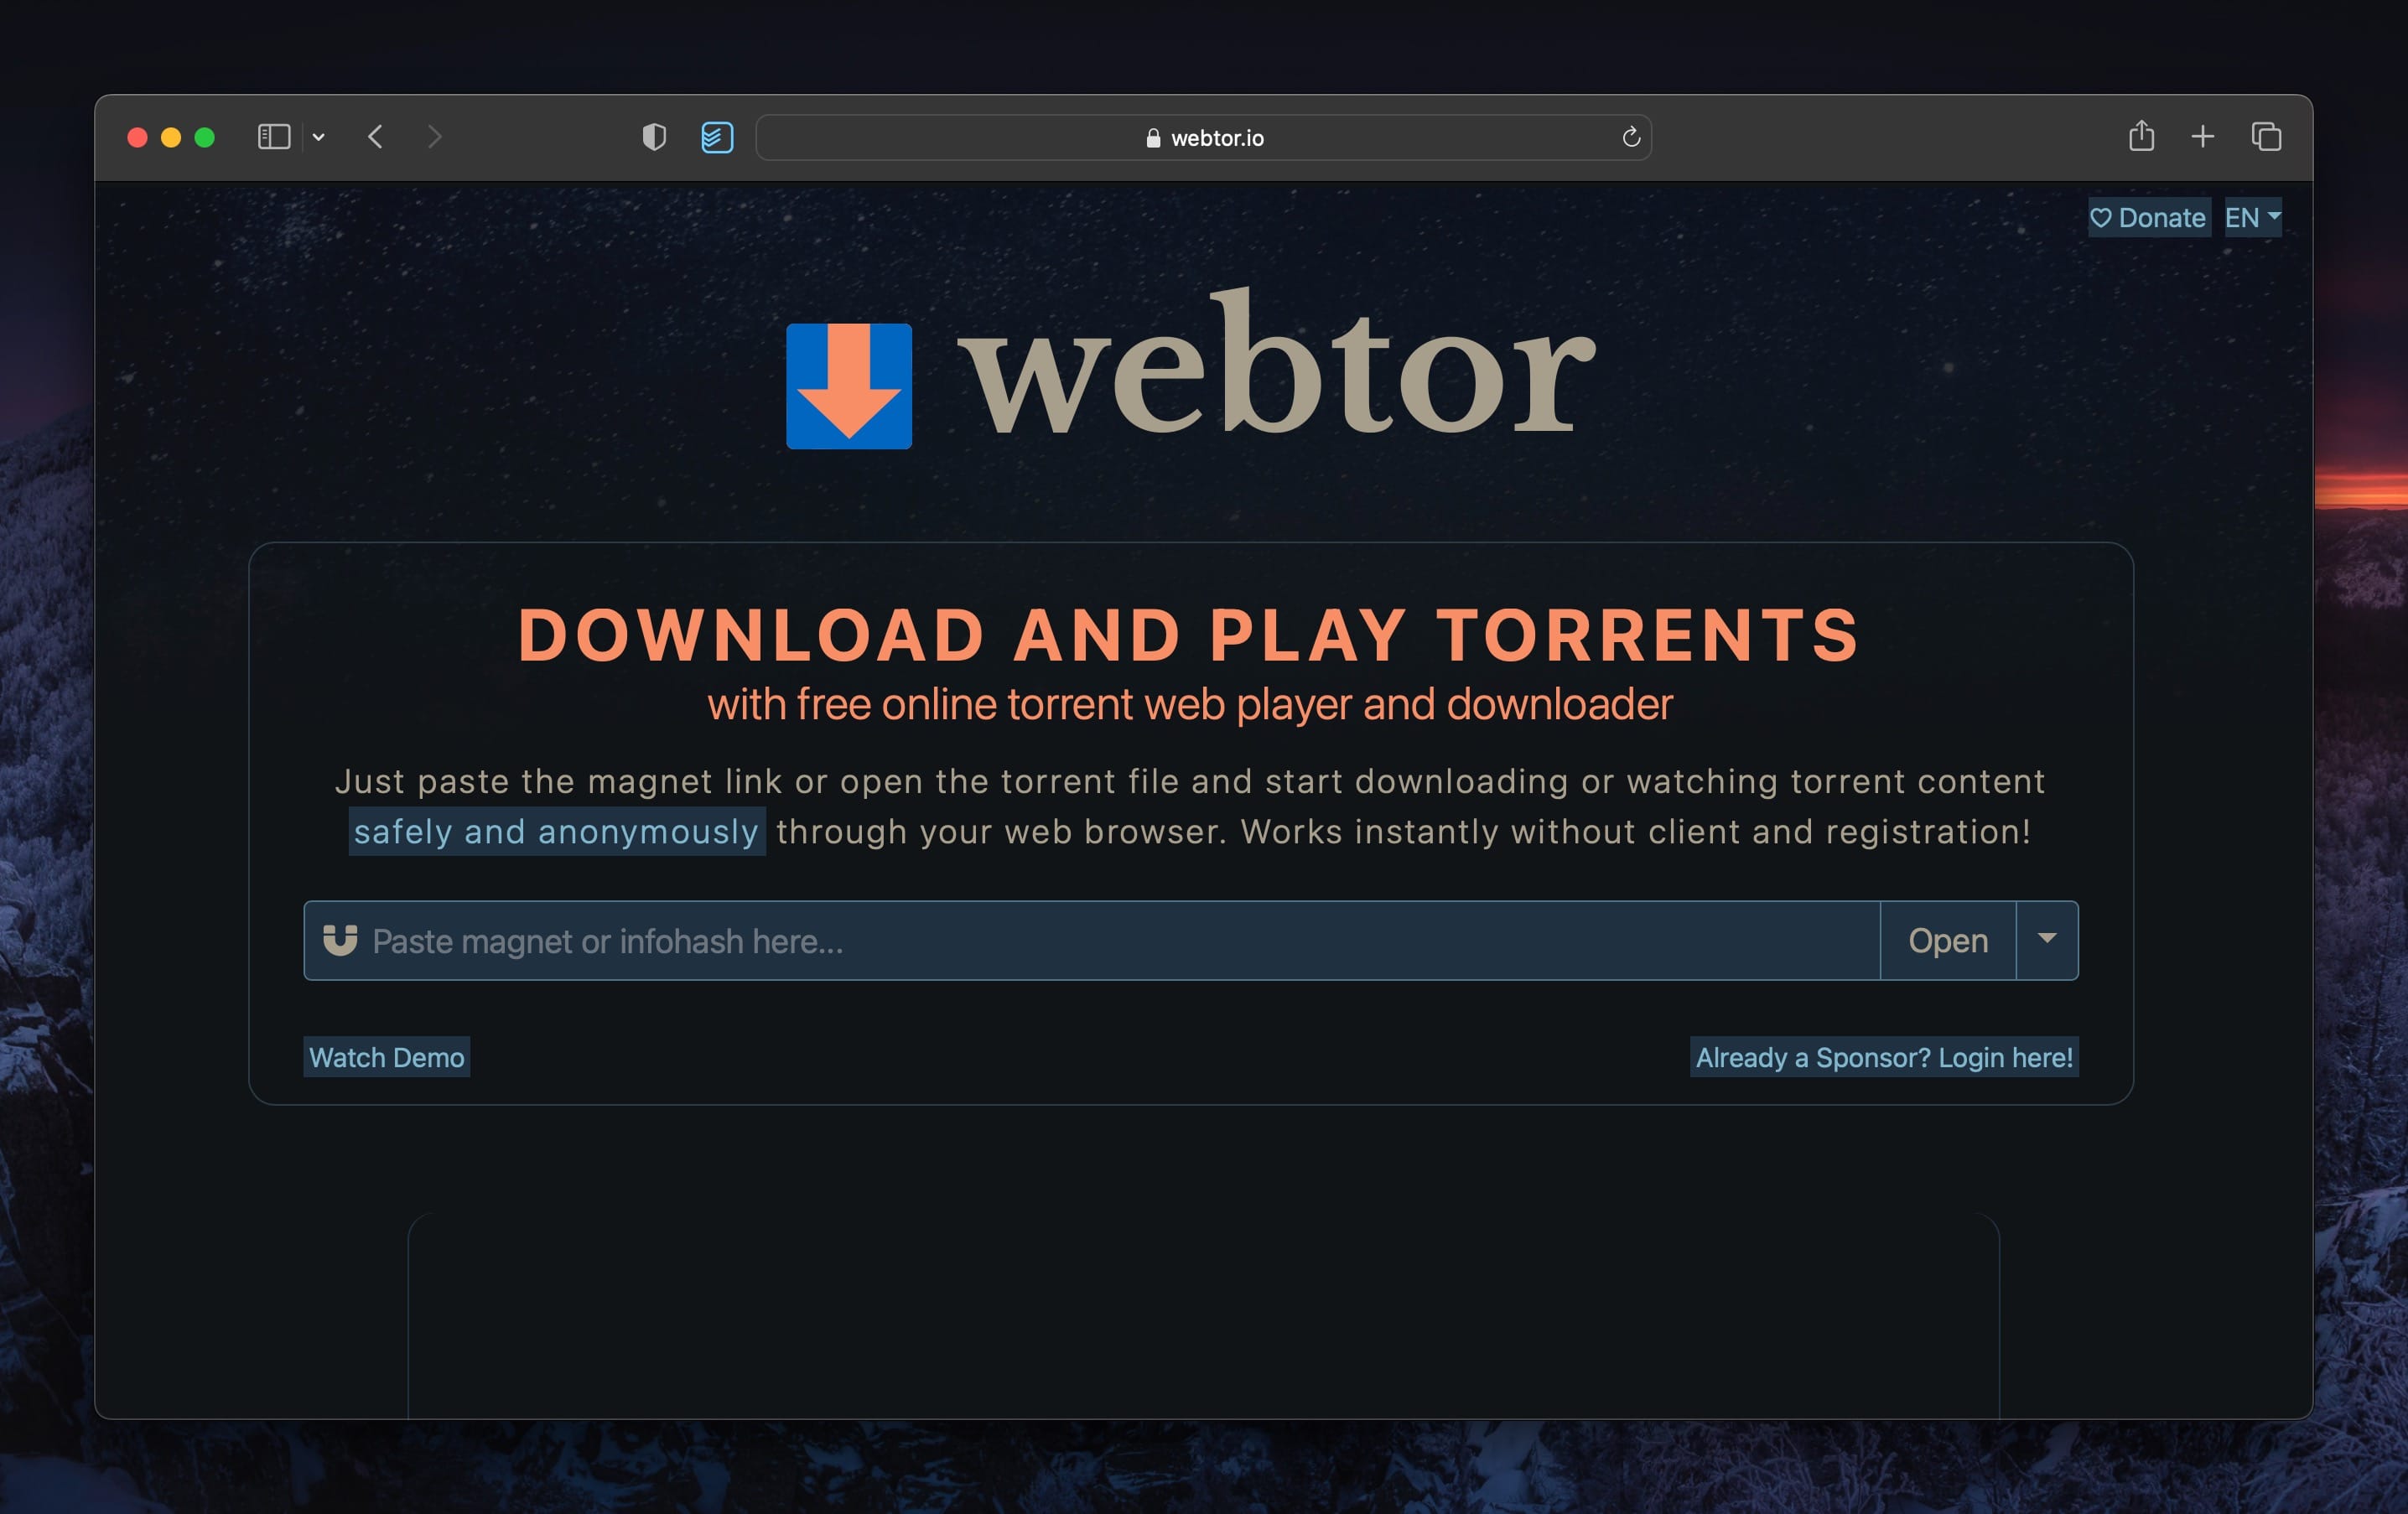 WebTor - Torrent Streaming Service